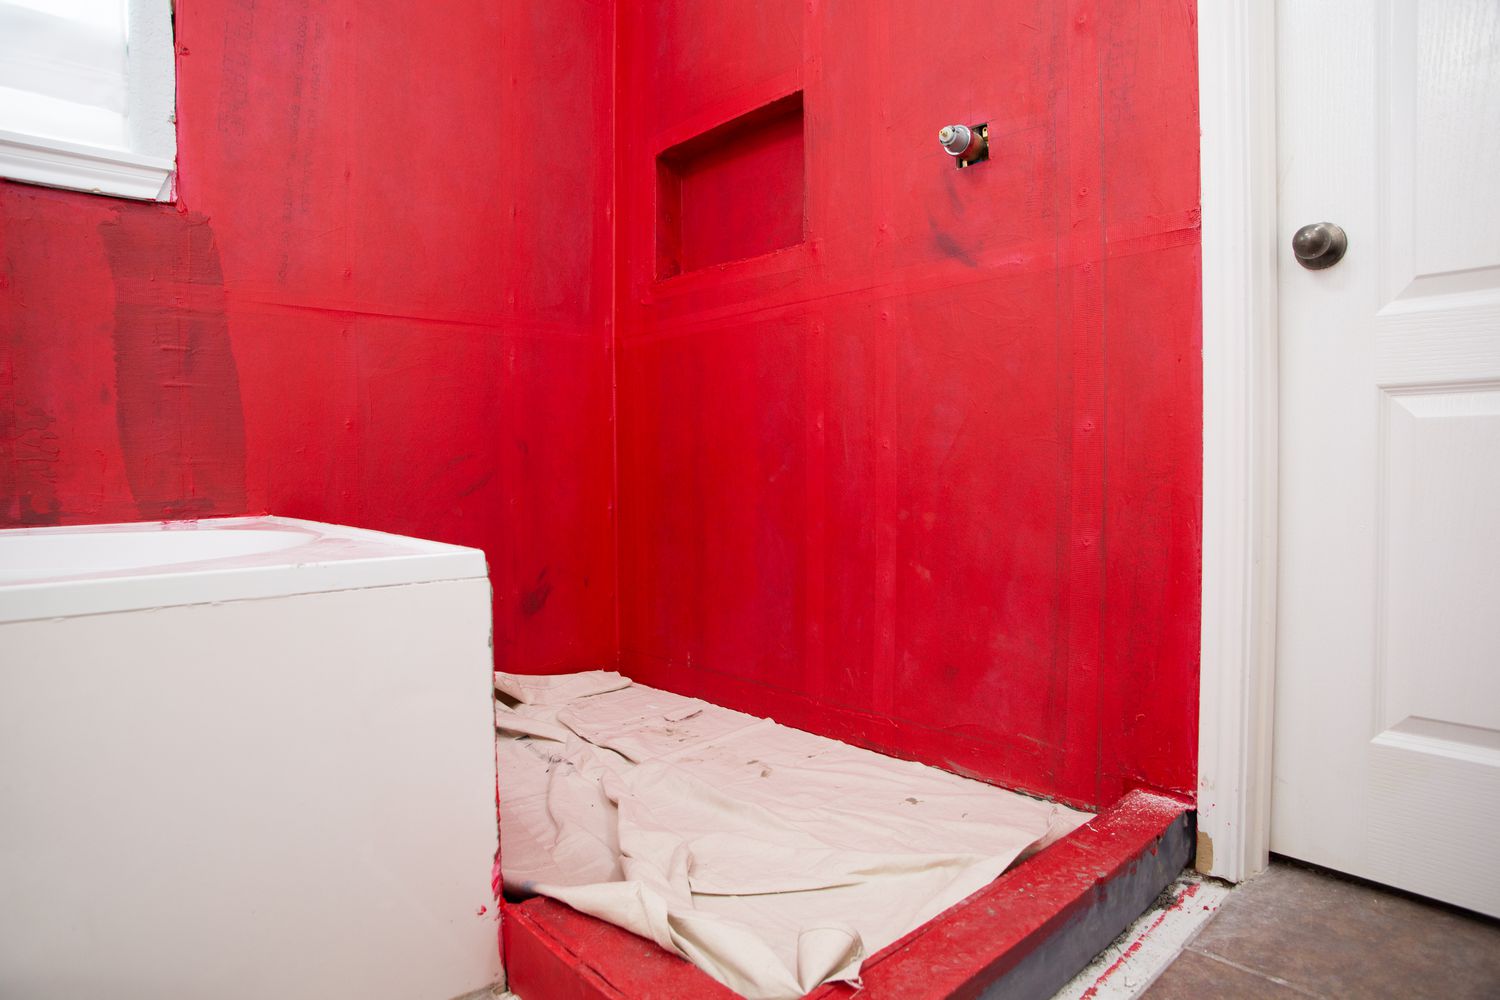 Surface du sol recouverte de tissu blanc dans une salle de bain aux murs rouges avant la pose de carreaux de céramique